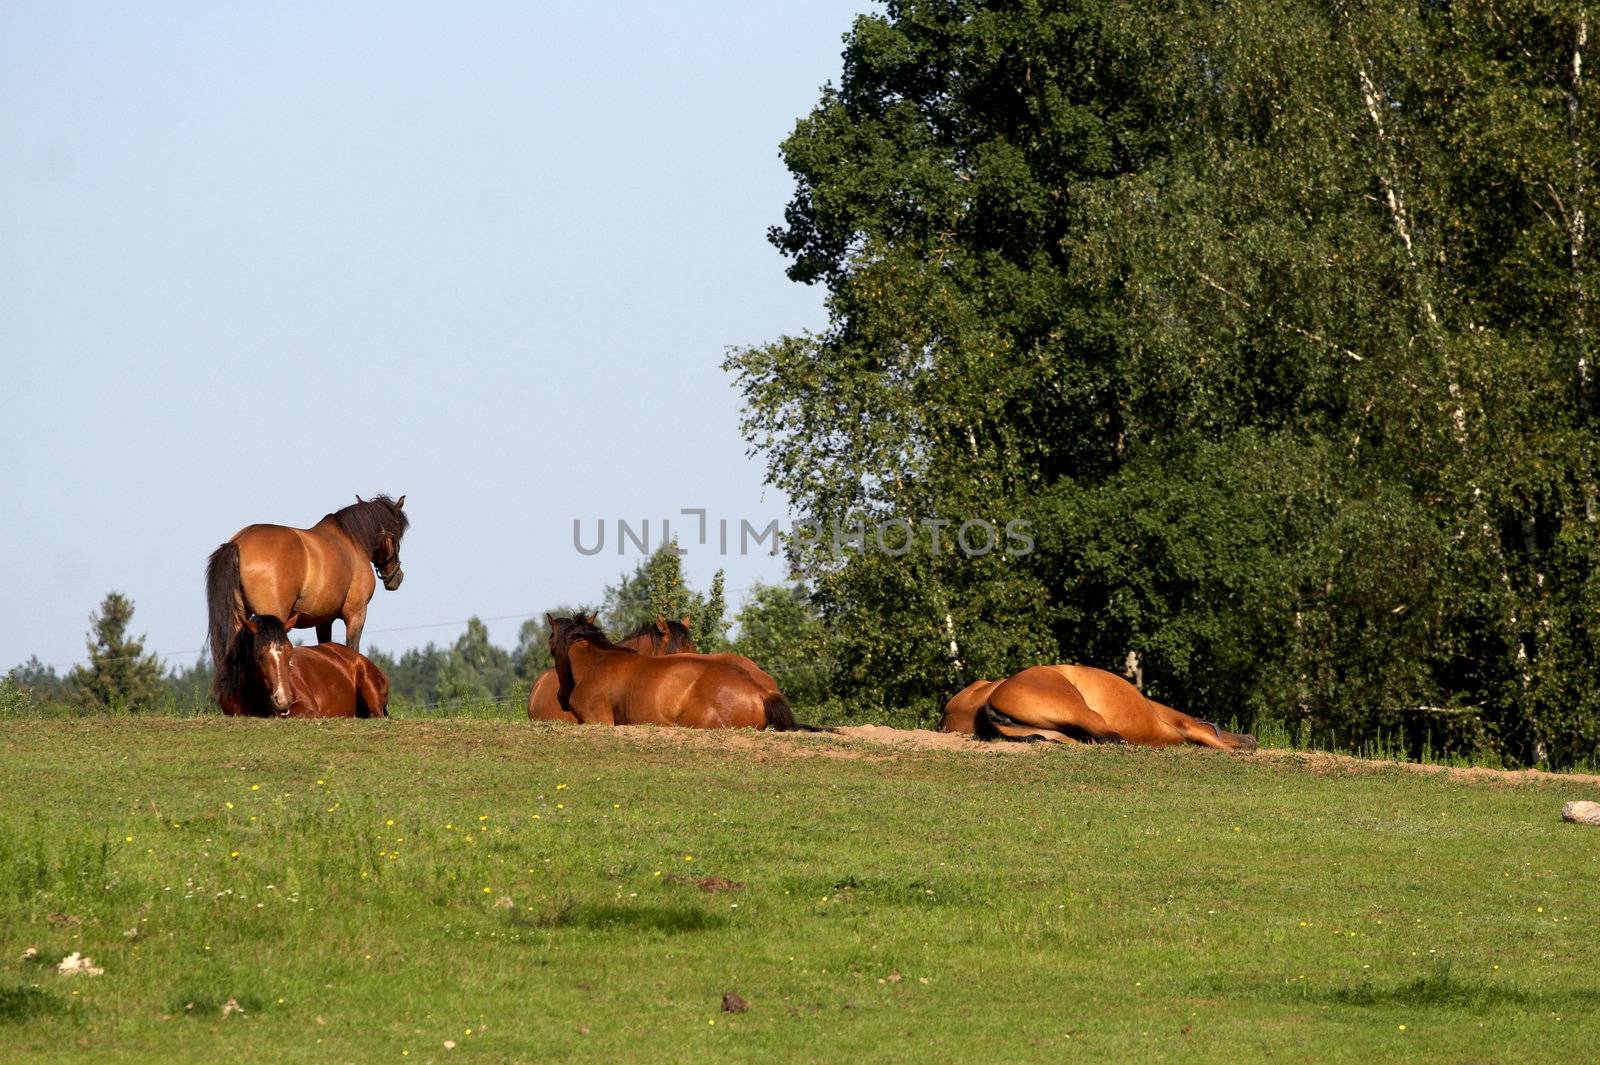 horses on freedom by amaxim